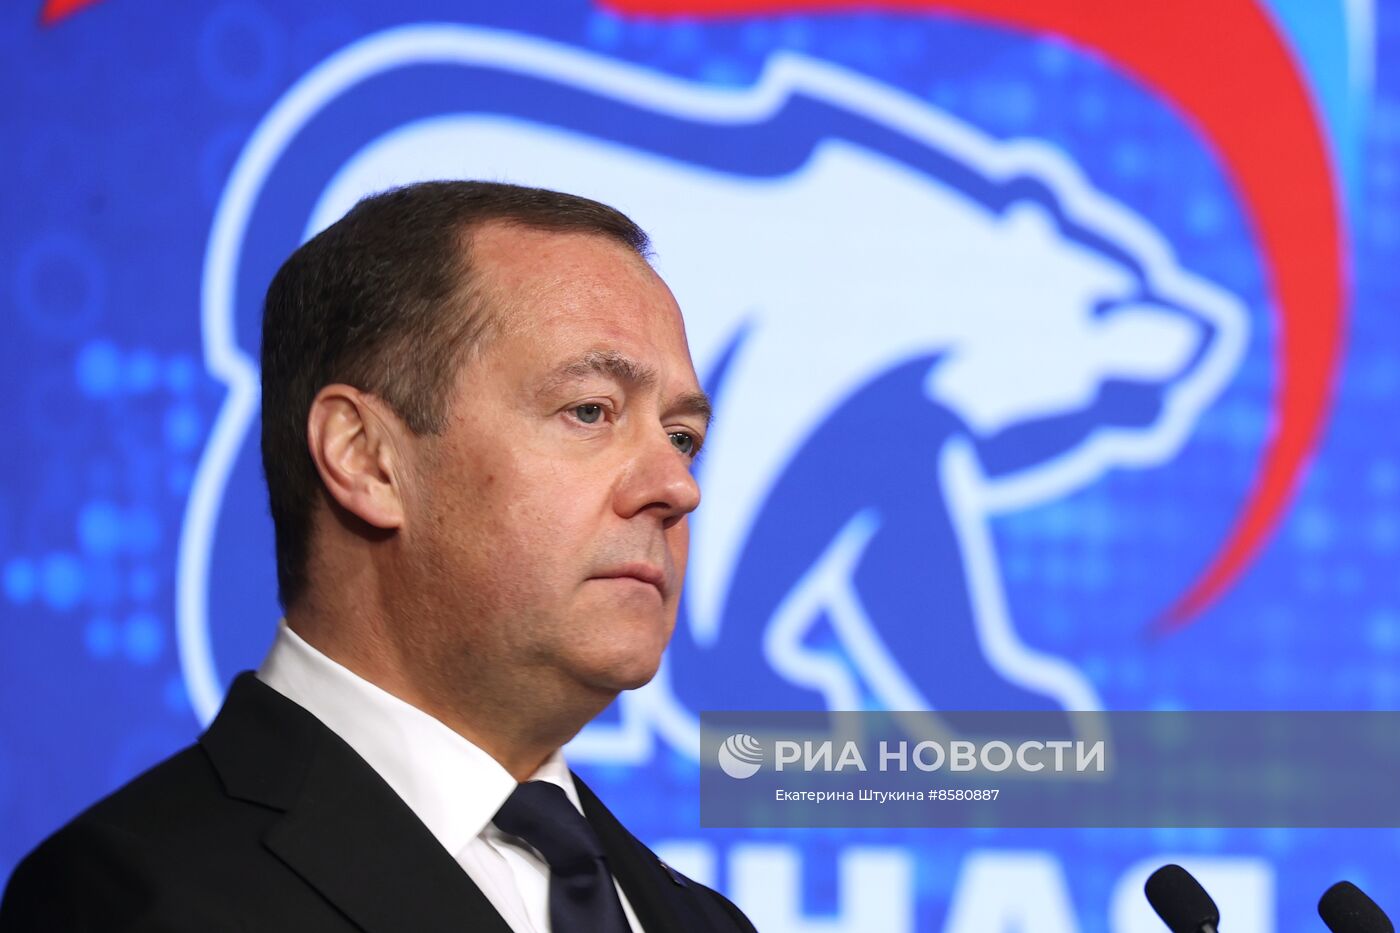  Зампред Совбеза РФ Д. Медведев посетил дискуссионную площадку XXI съезда партии "Единая Россия"